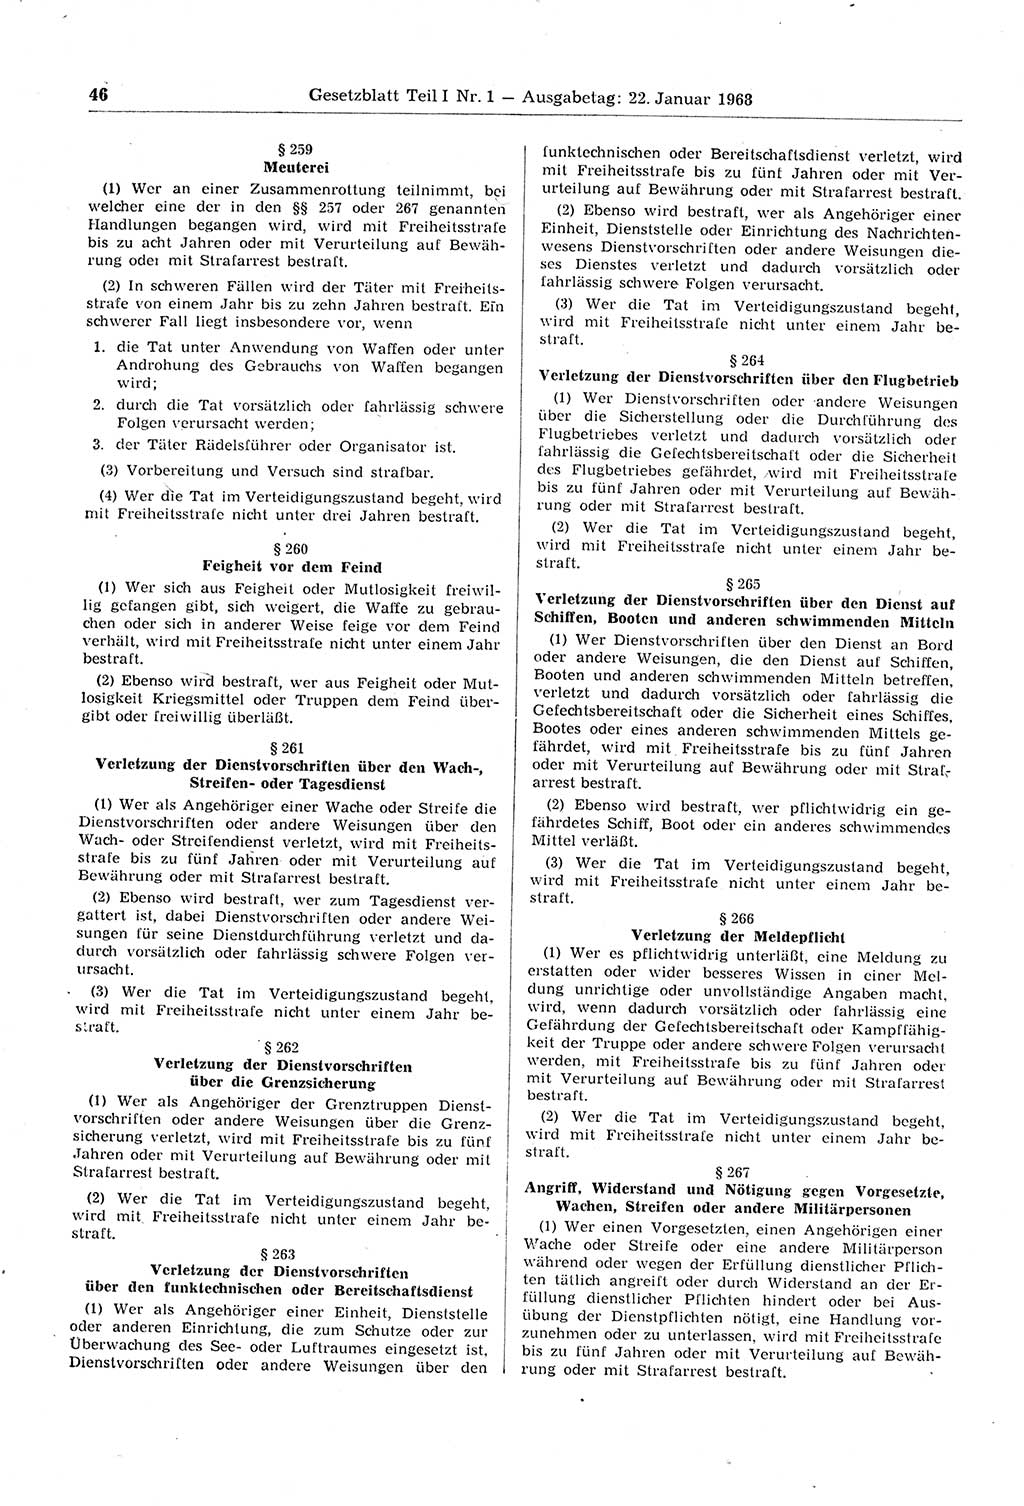 Gesetzblatt (GBl.) der Deutschen Demokratischen Republik (DDR) Teil Ⅰ 1968, Seite 46 (GBl. DDR Ⅰ 1968, S. 46)